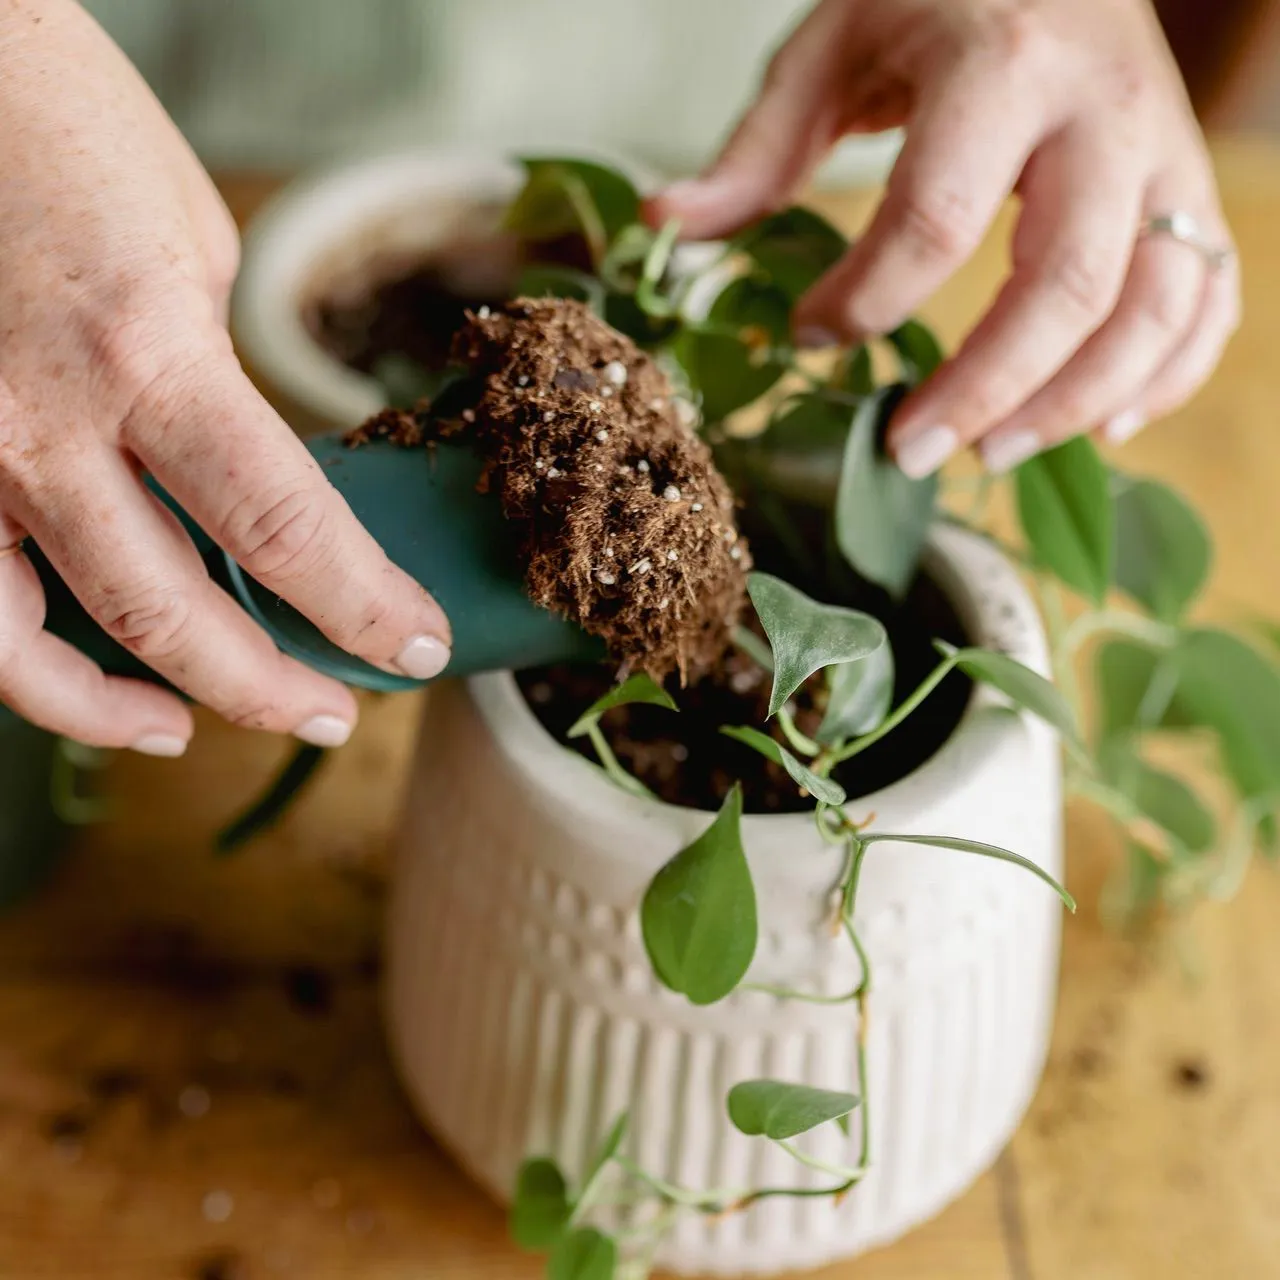 Hands potting a plant